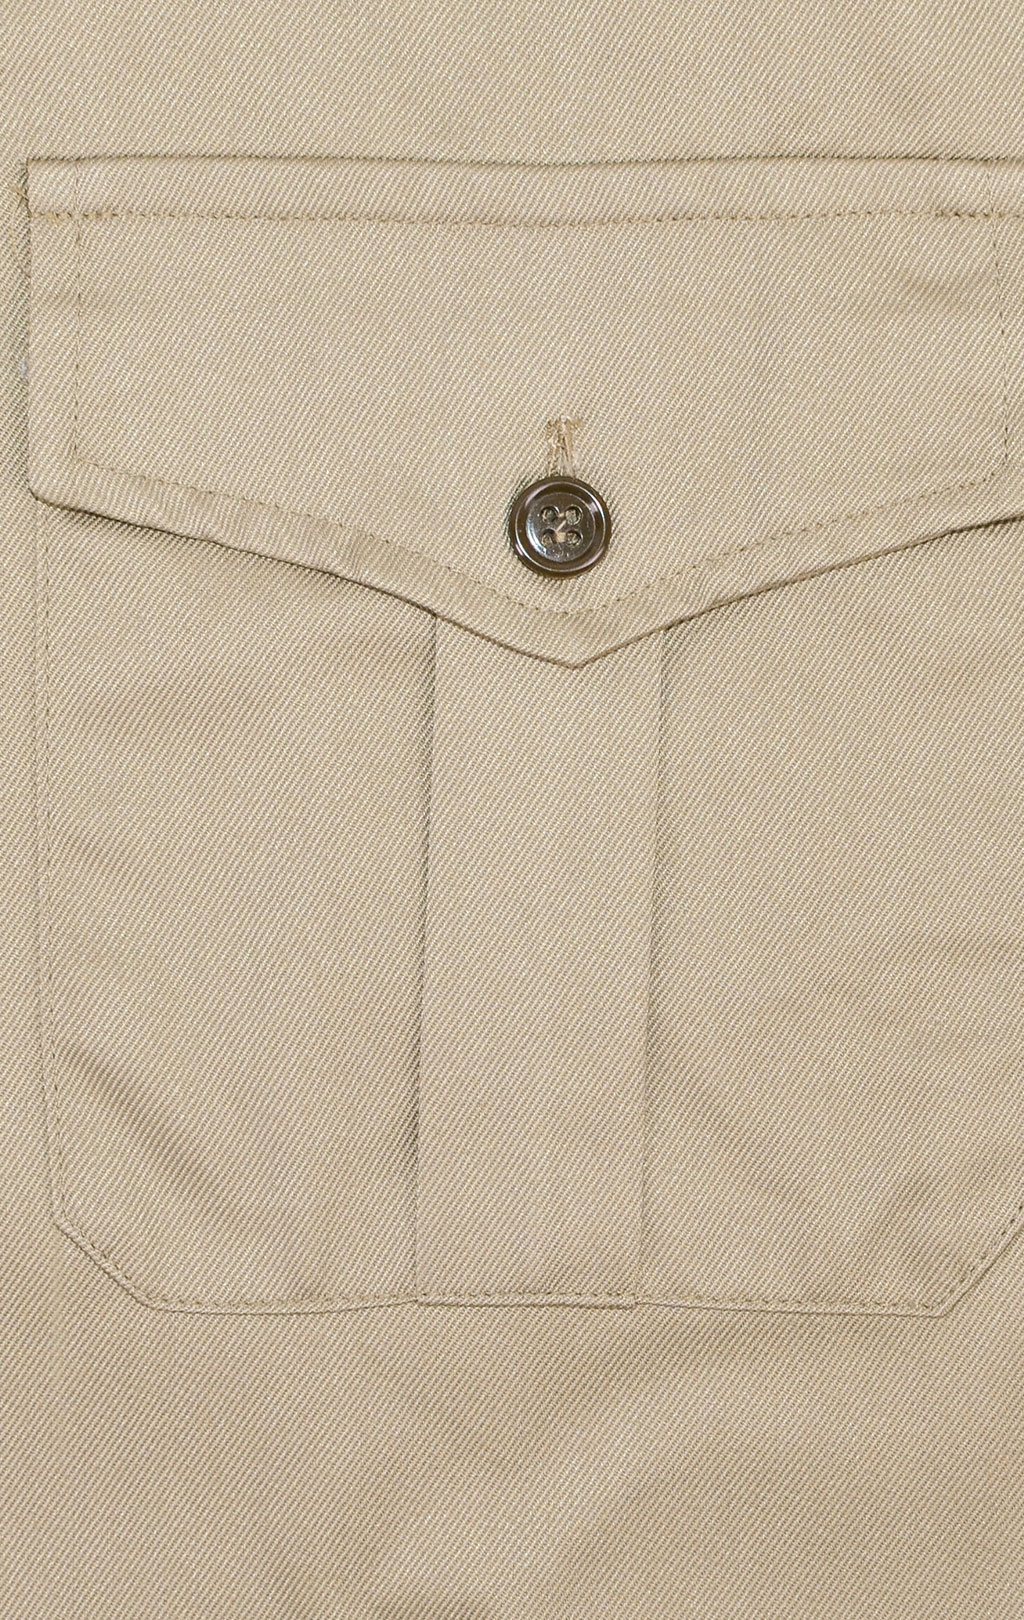 Рубашка армейская хлопок короткий рукав khaki Италия